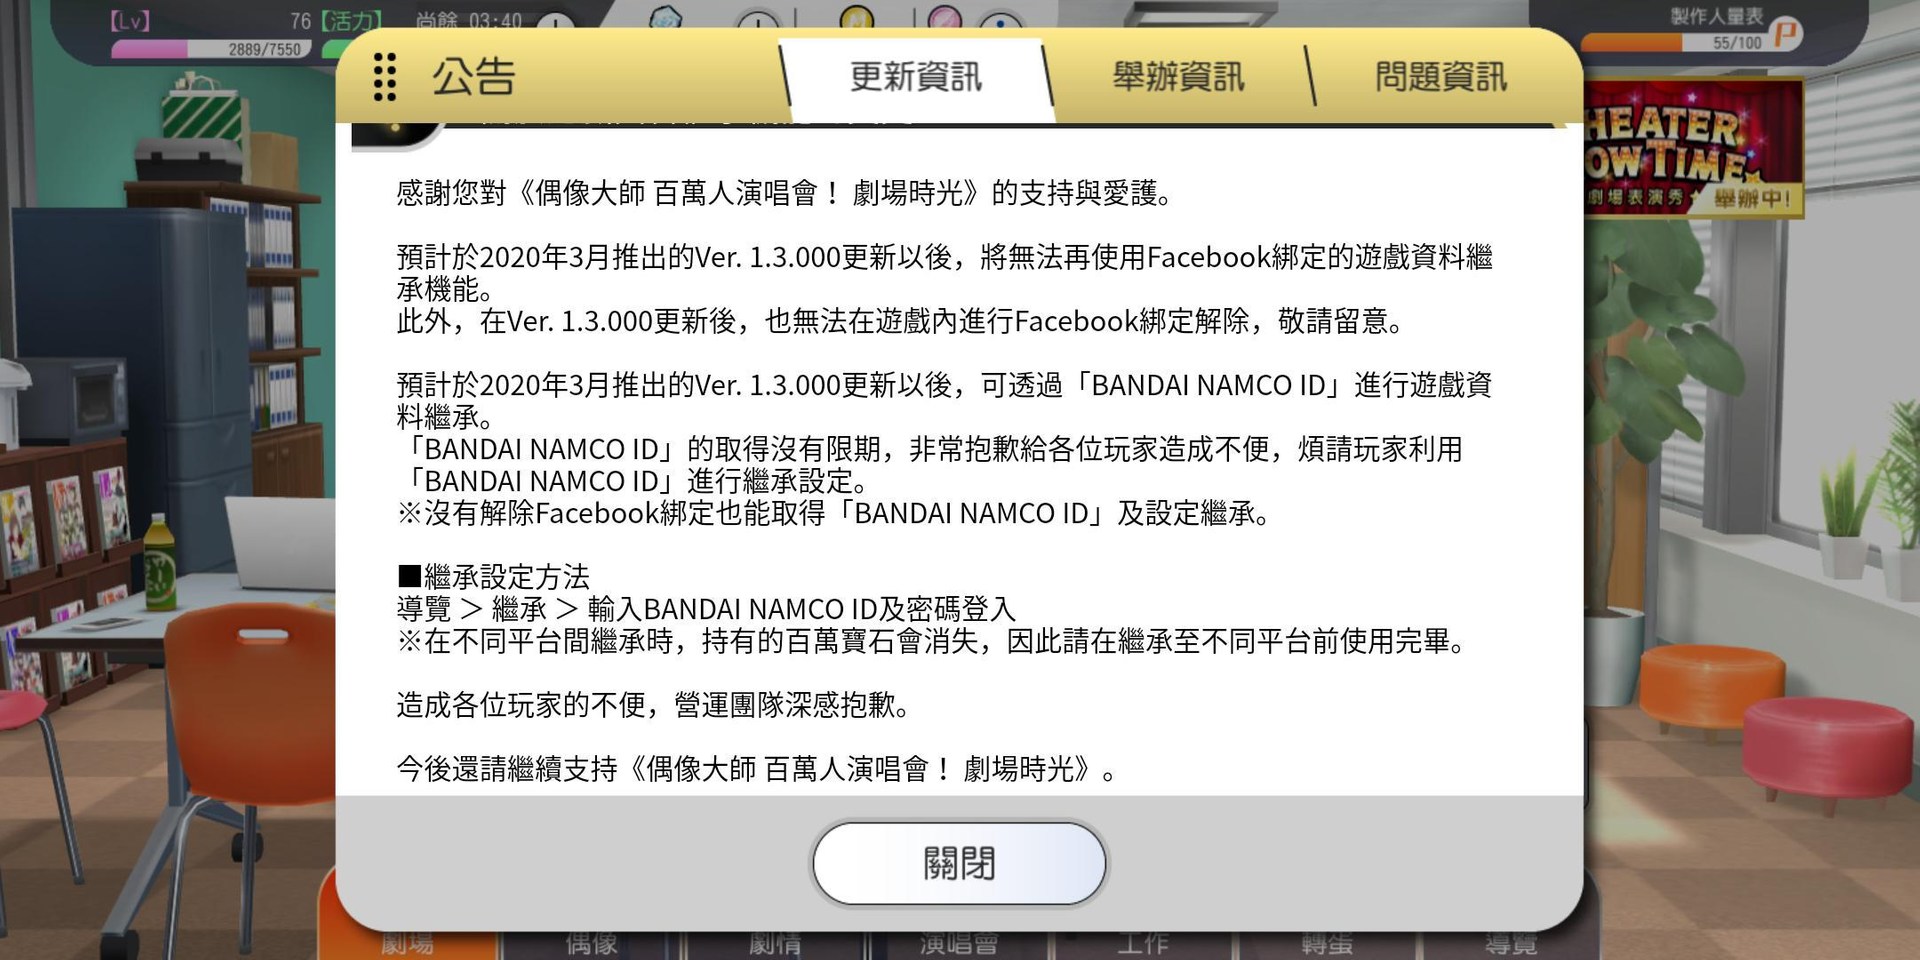 問題 關於3月將推出的bandai Namco Id綁定 偶像大師百萬人演唱會 劇場時光哈啦板 巴哈姆特